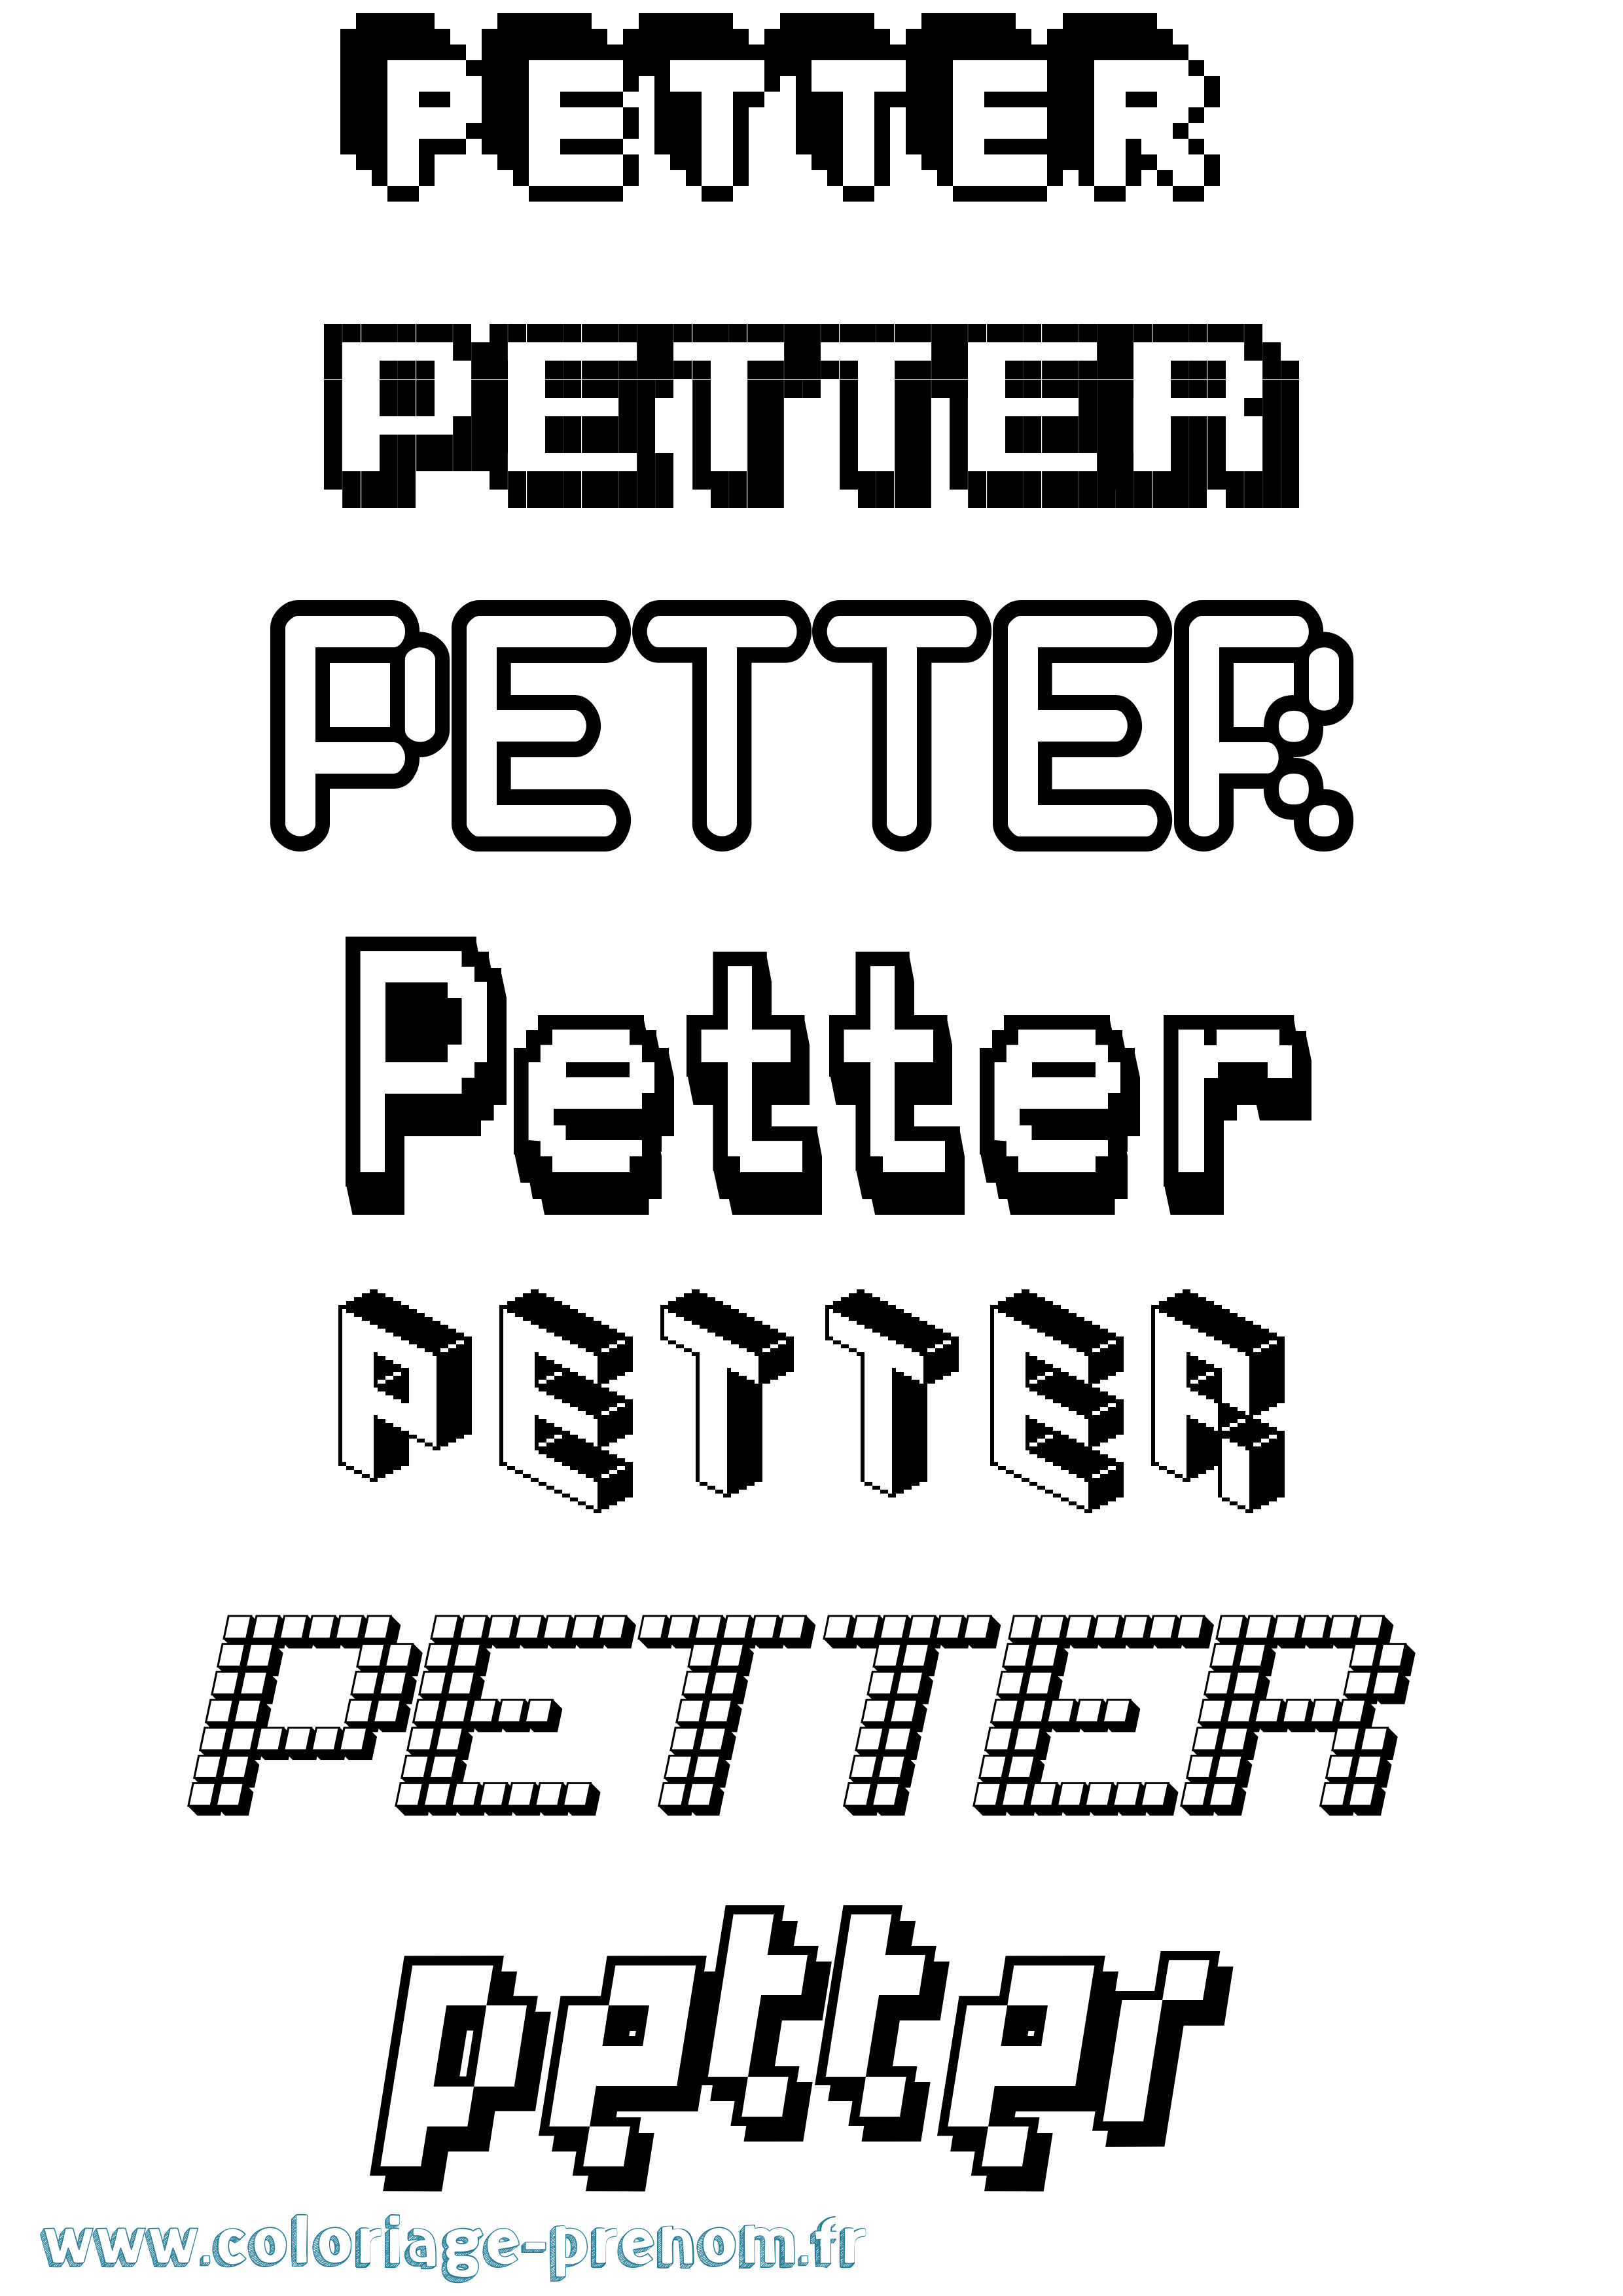 Coloriage prénom Petter Pixel